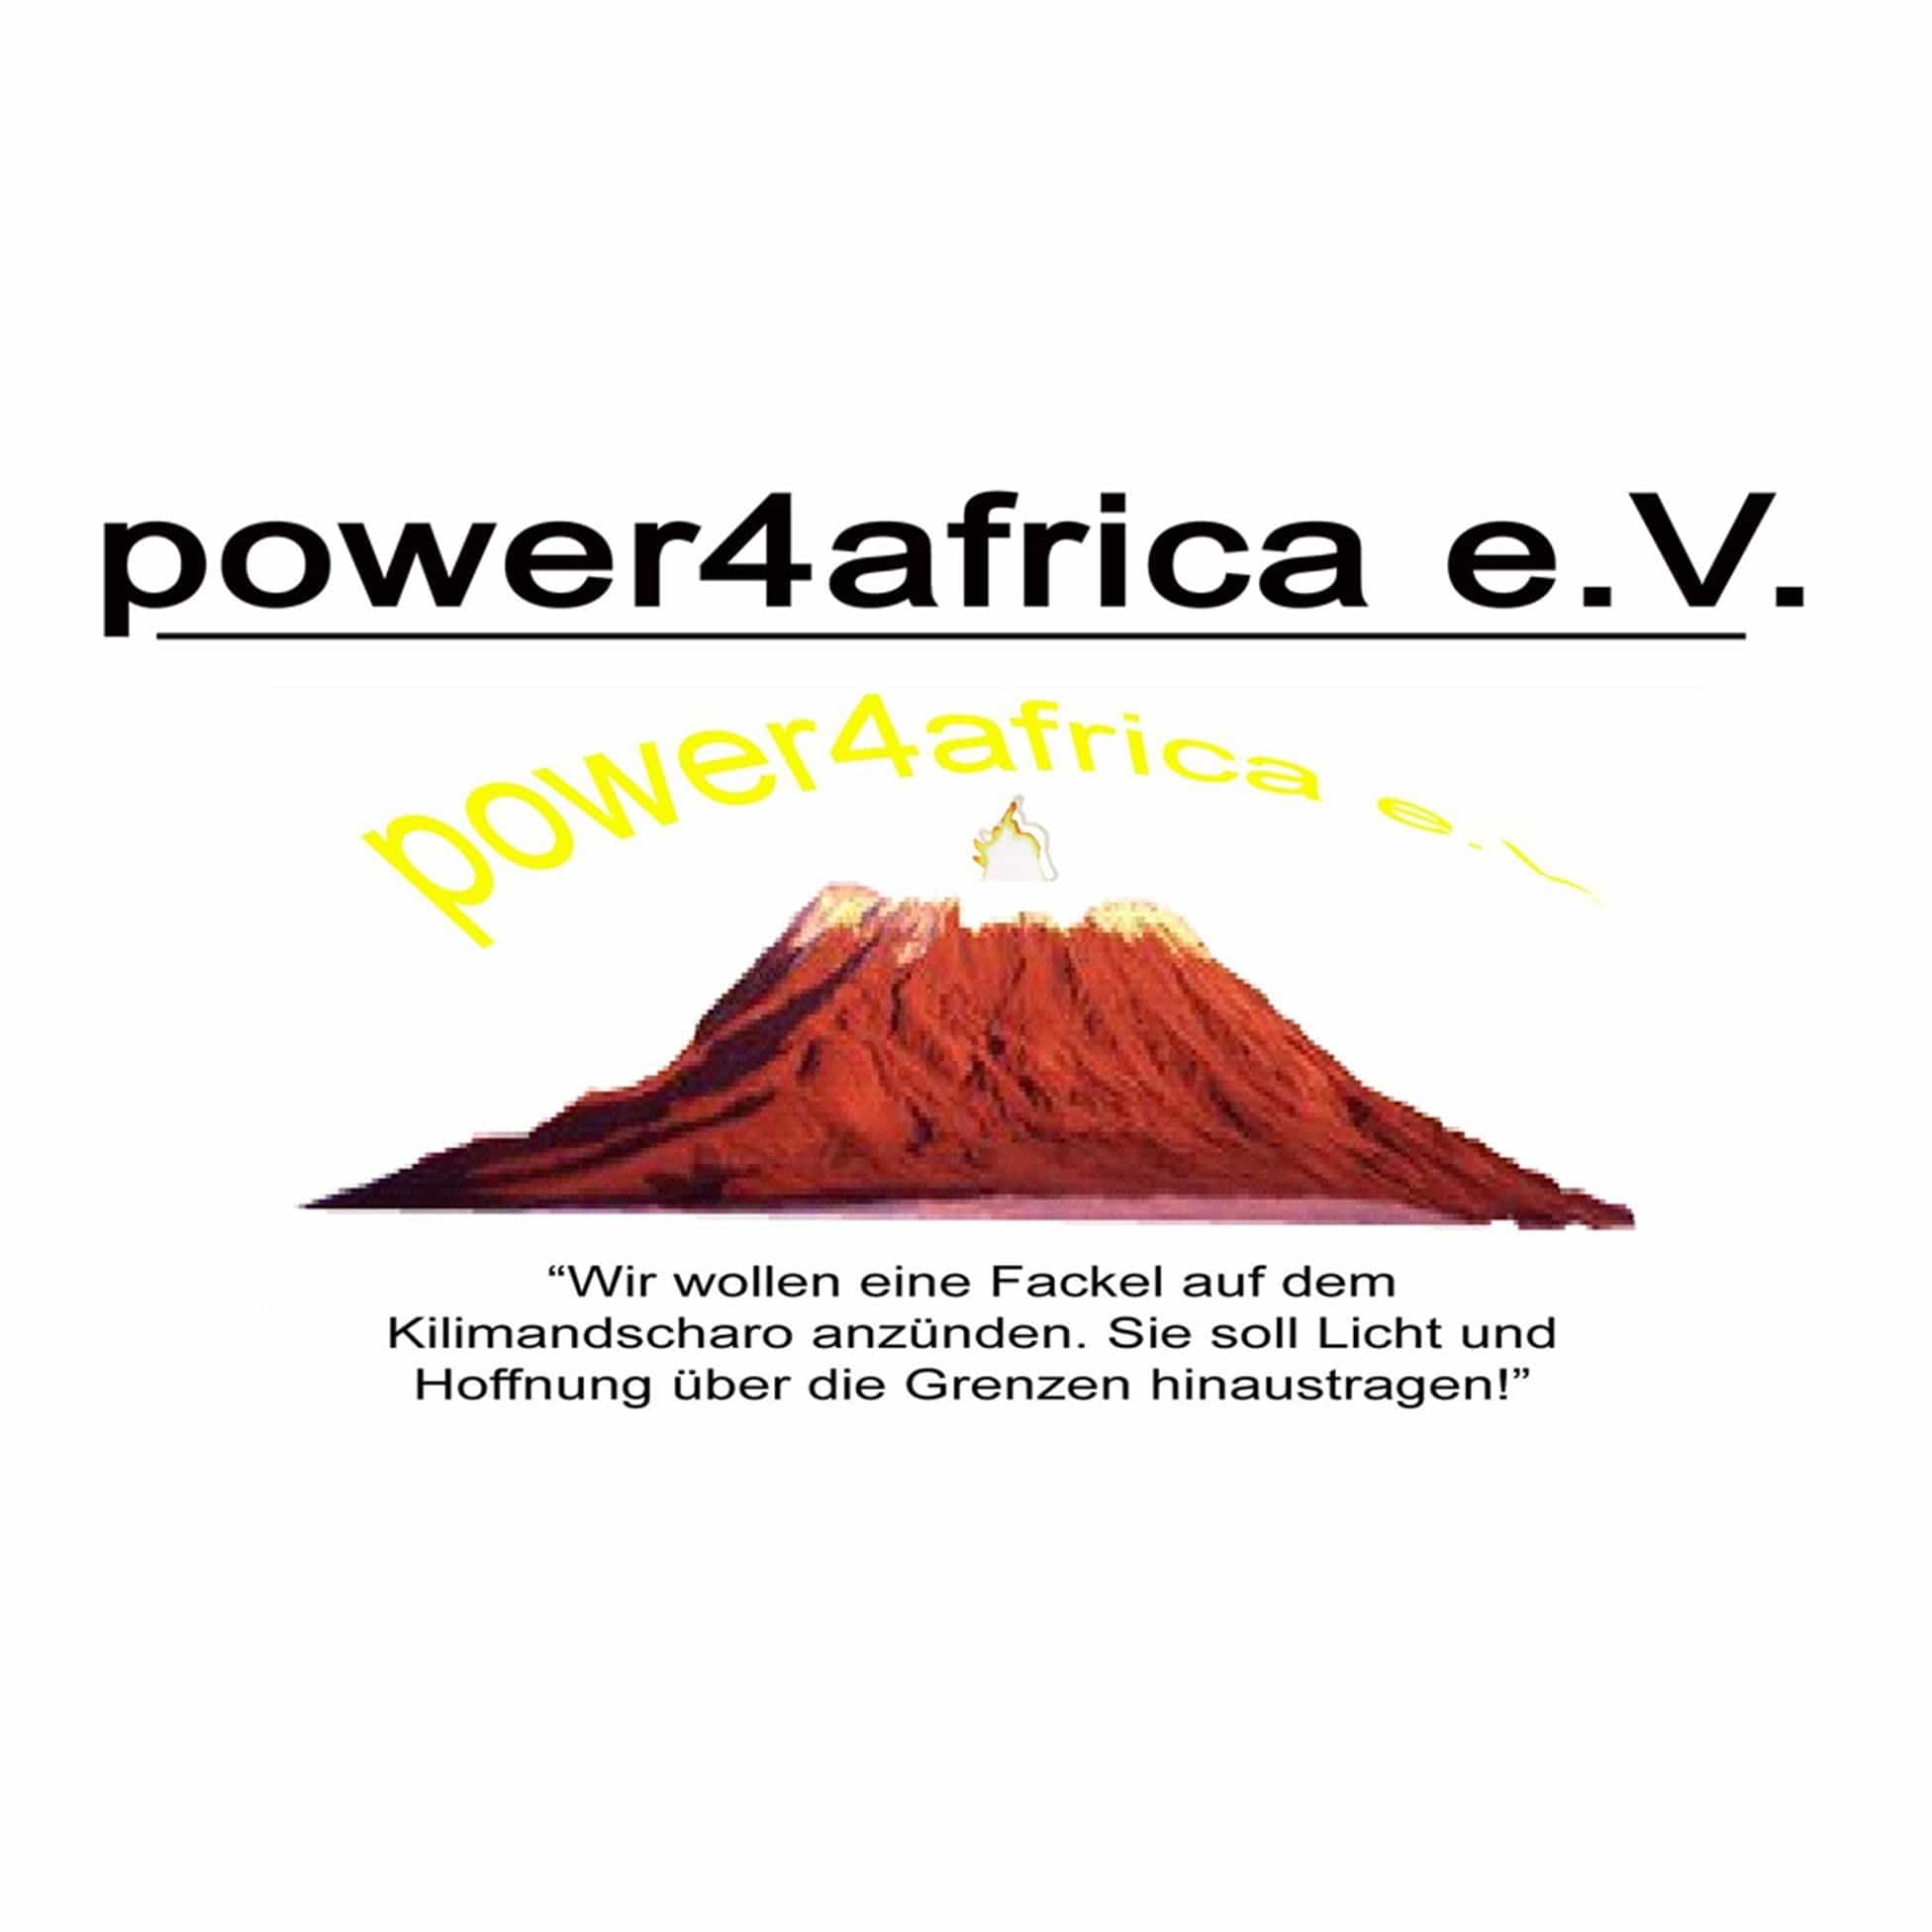 power4africa e.V.